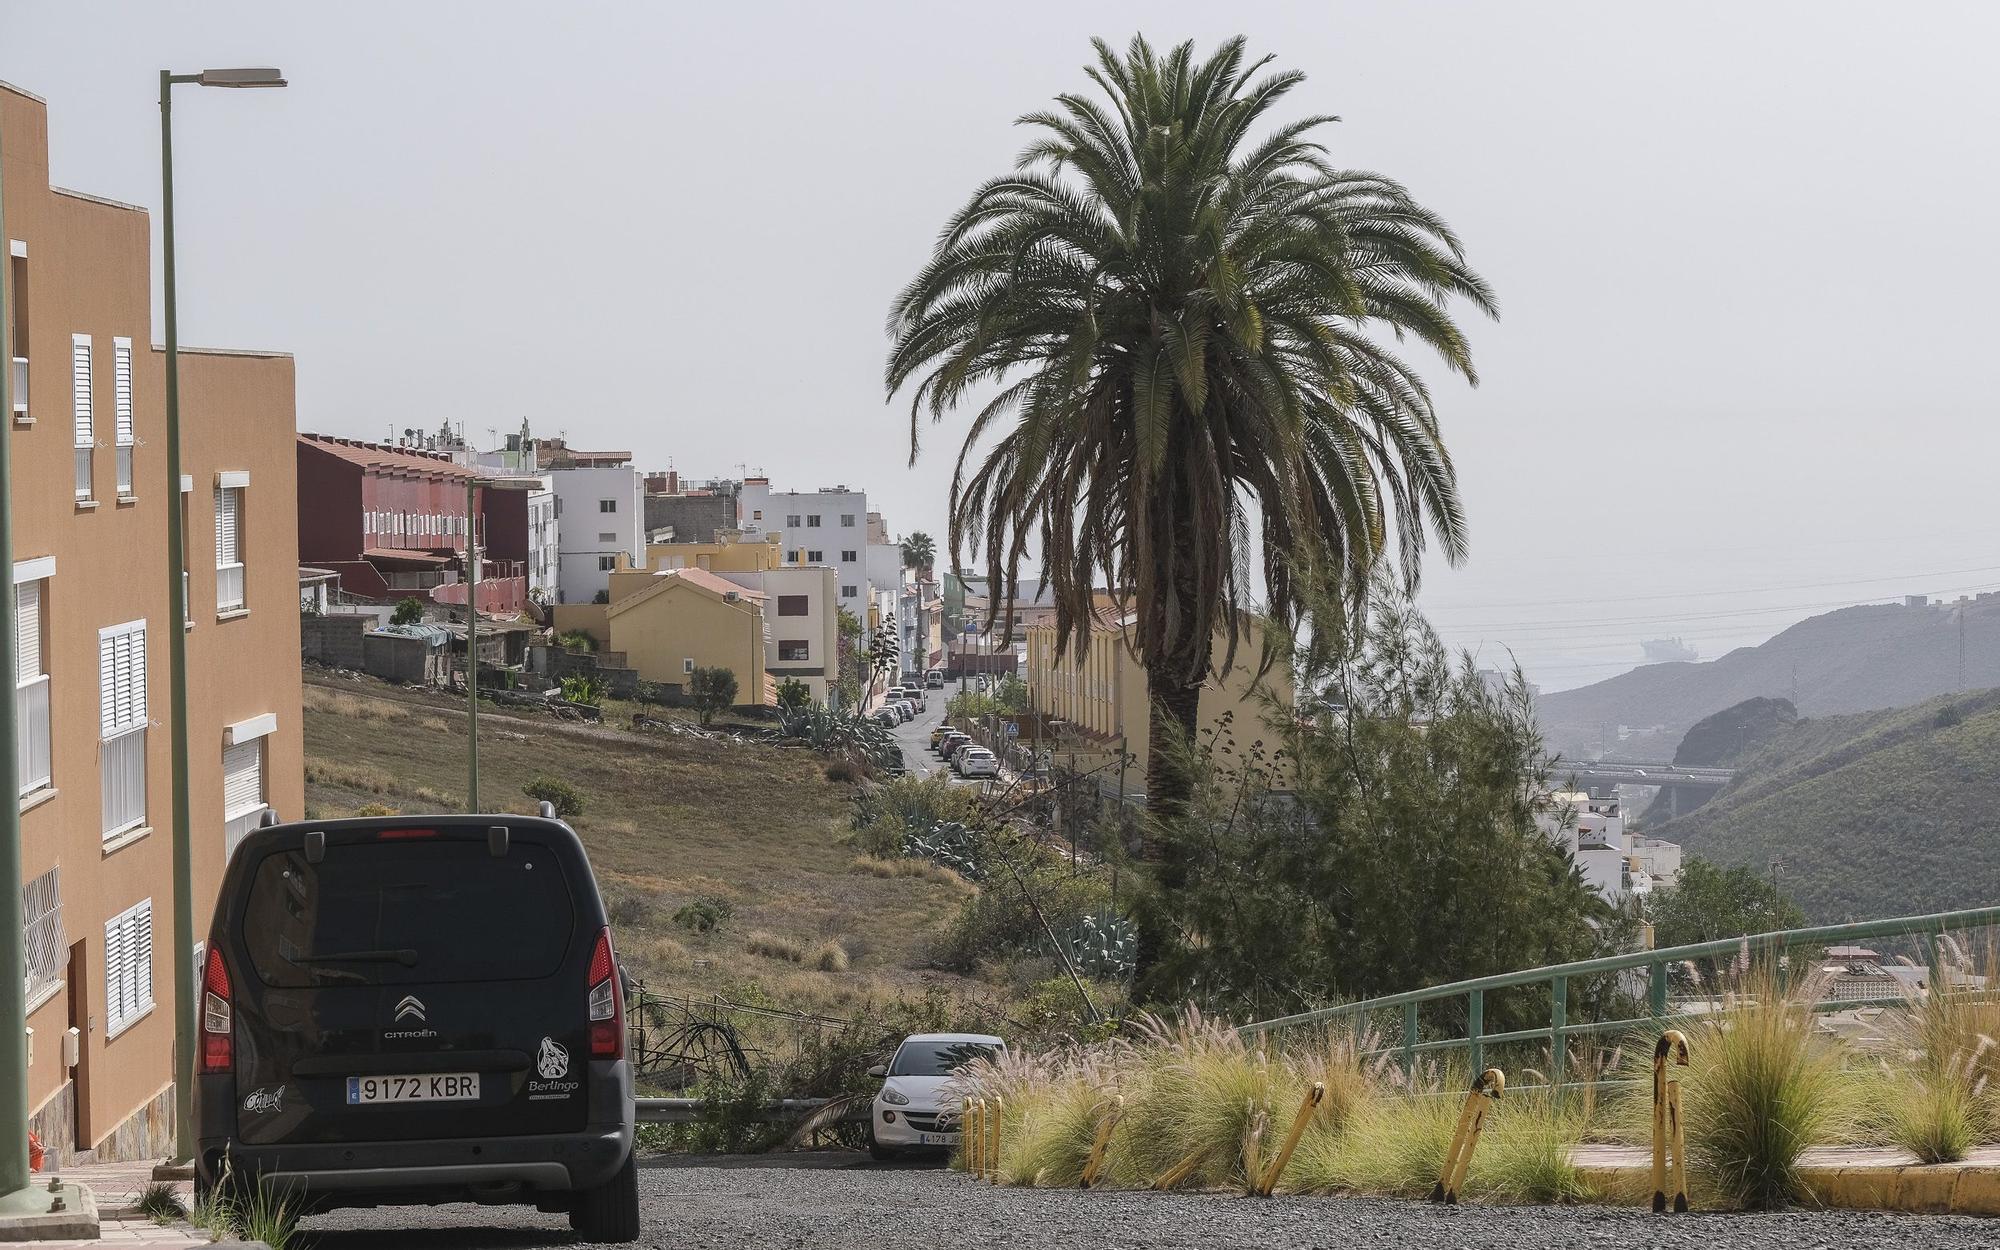 Falta de limpieza en las calles del barrio de El Fondillo en Las Palmas de Gran Canaria